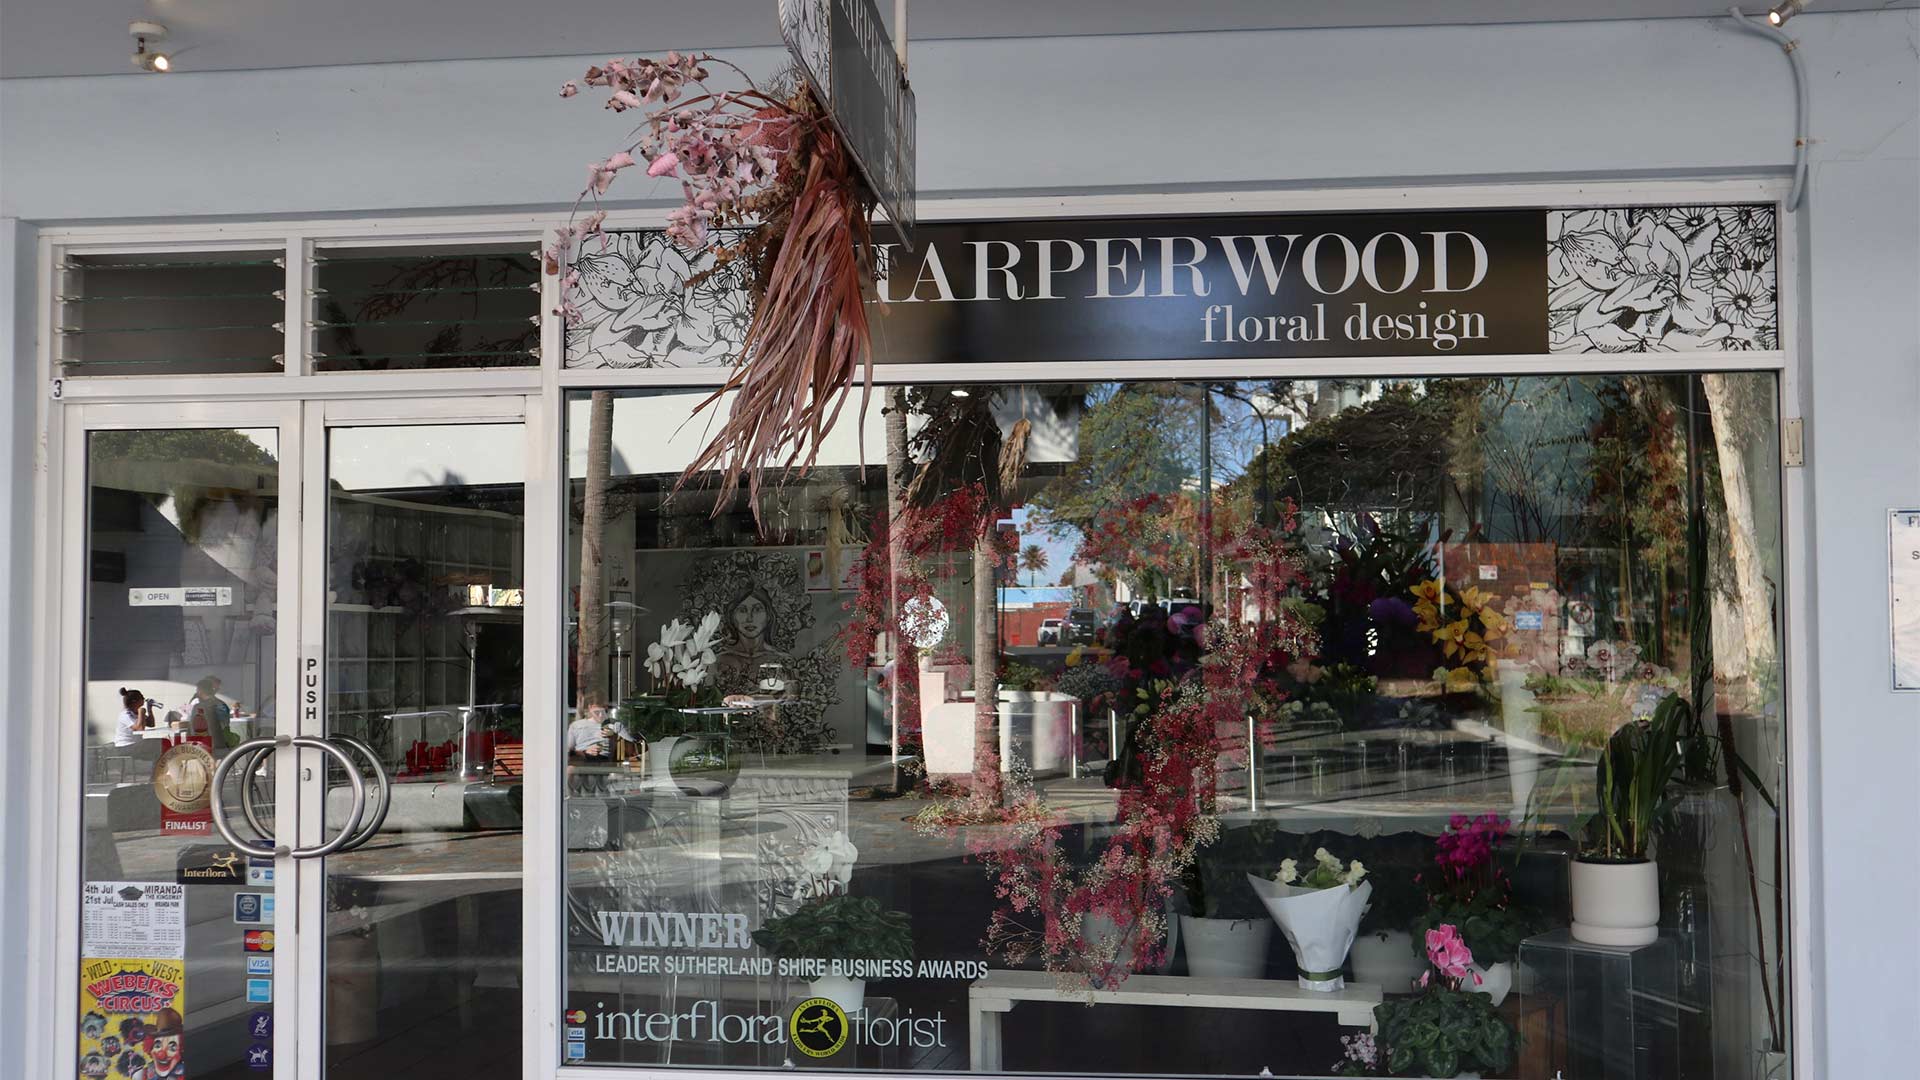 Harperwood Floral Design